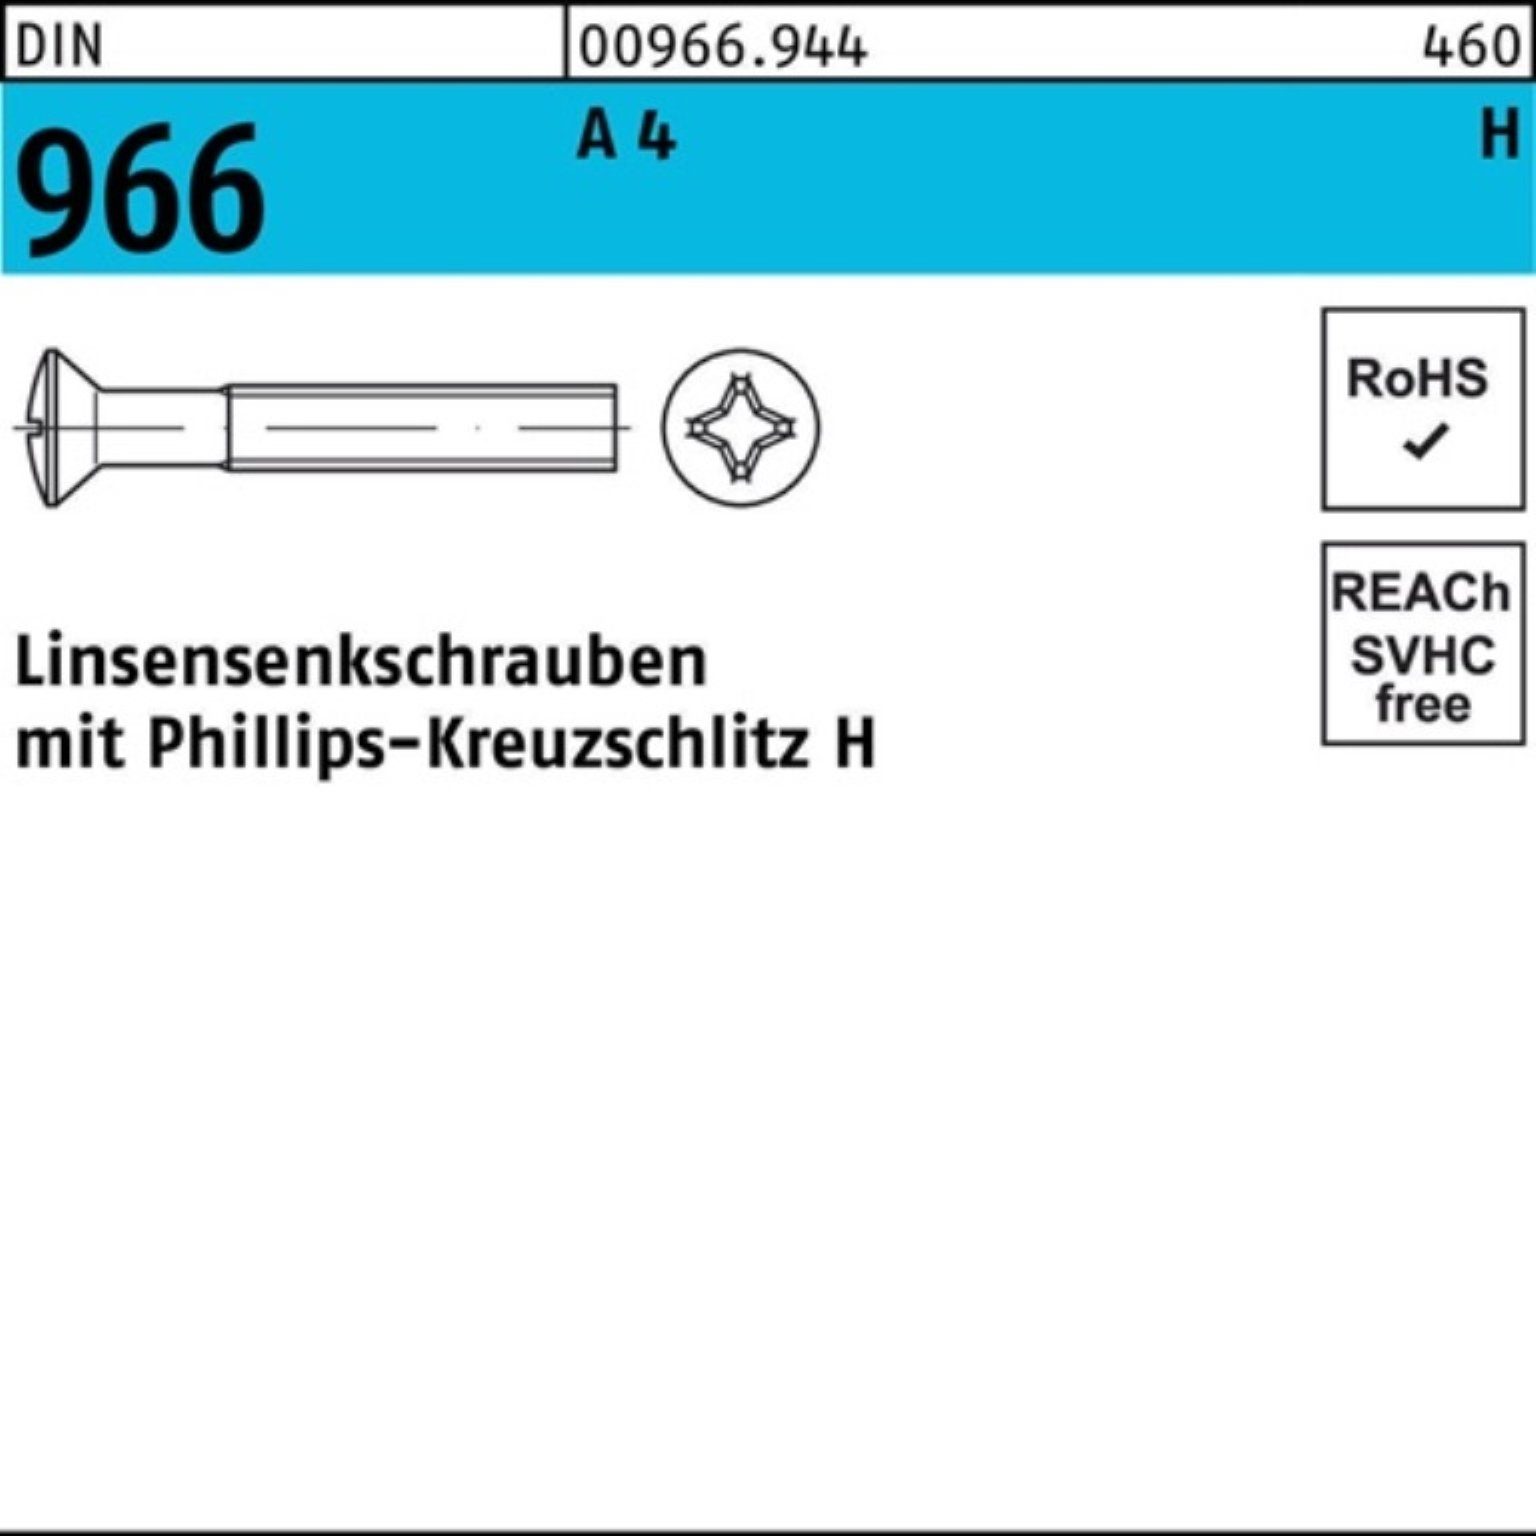 Reyher M5x Linsenschraube Linsensenkschraube Kreuzschlitz Pack 40-H PH 966 200er A DIN 200 4